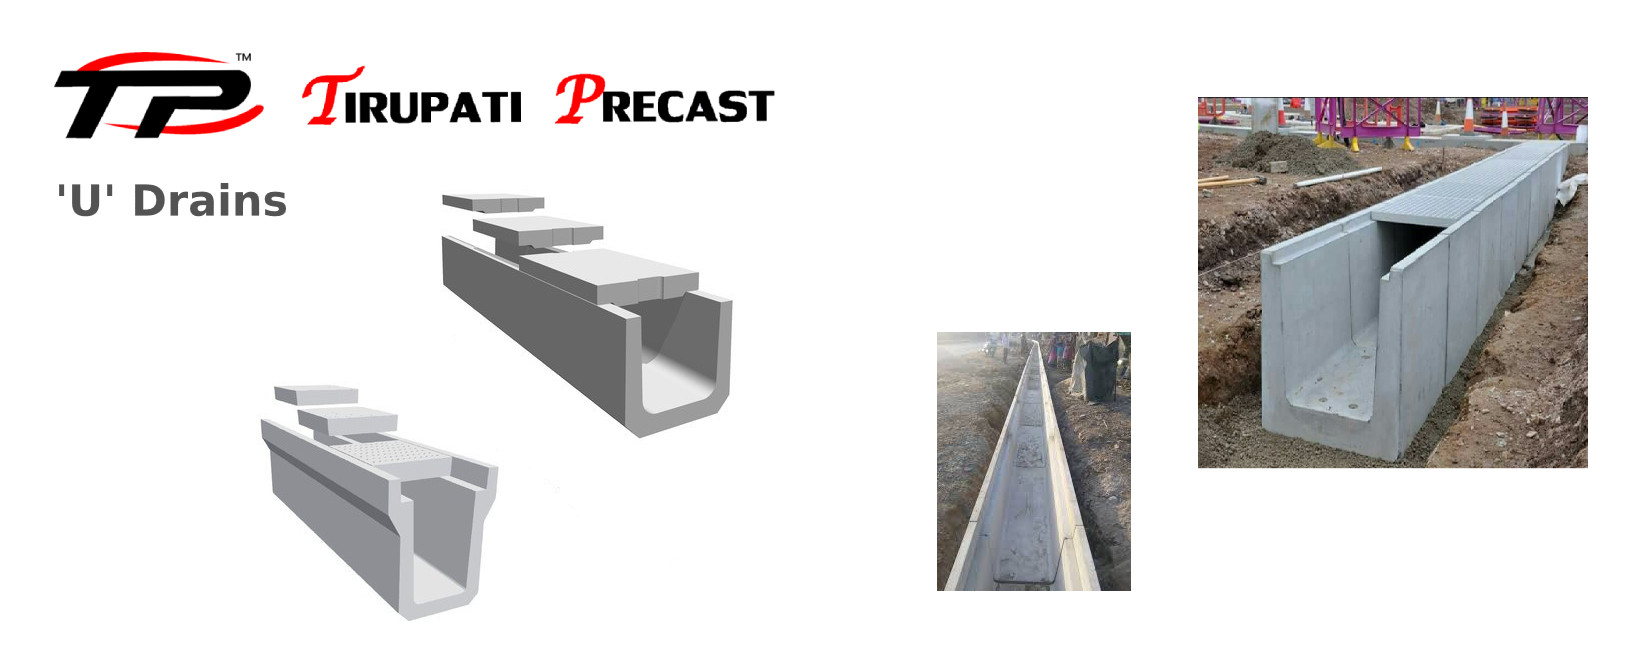 tirupati-precast-compound-walls-benches-poles-blocks-quarters-drains-stones